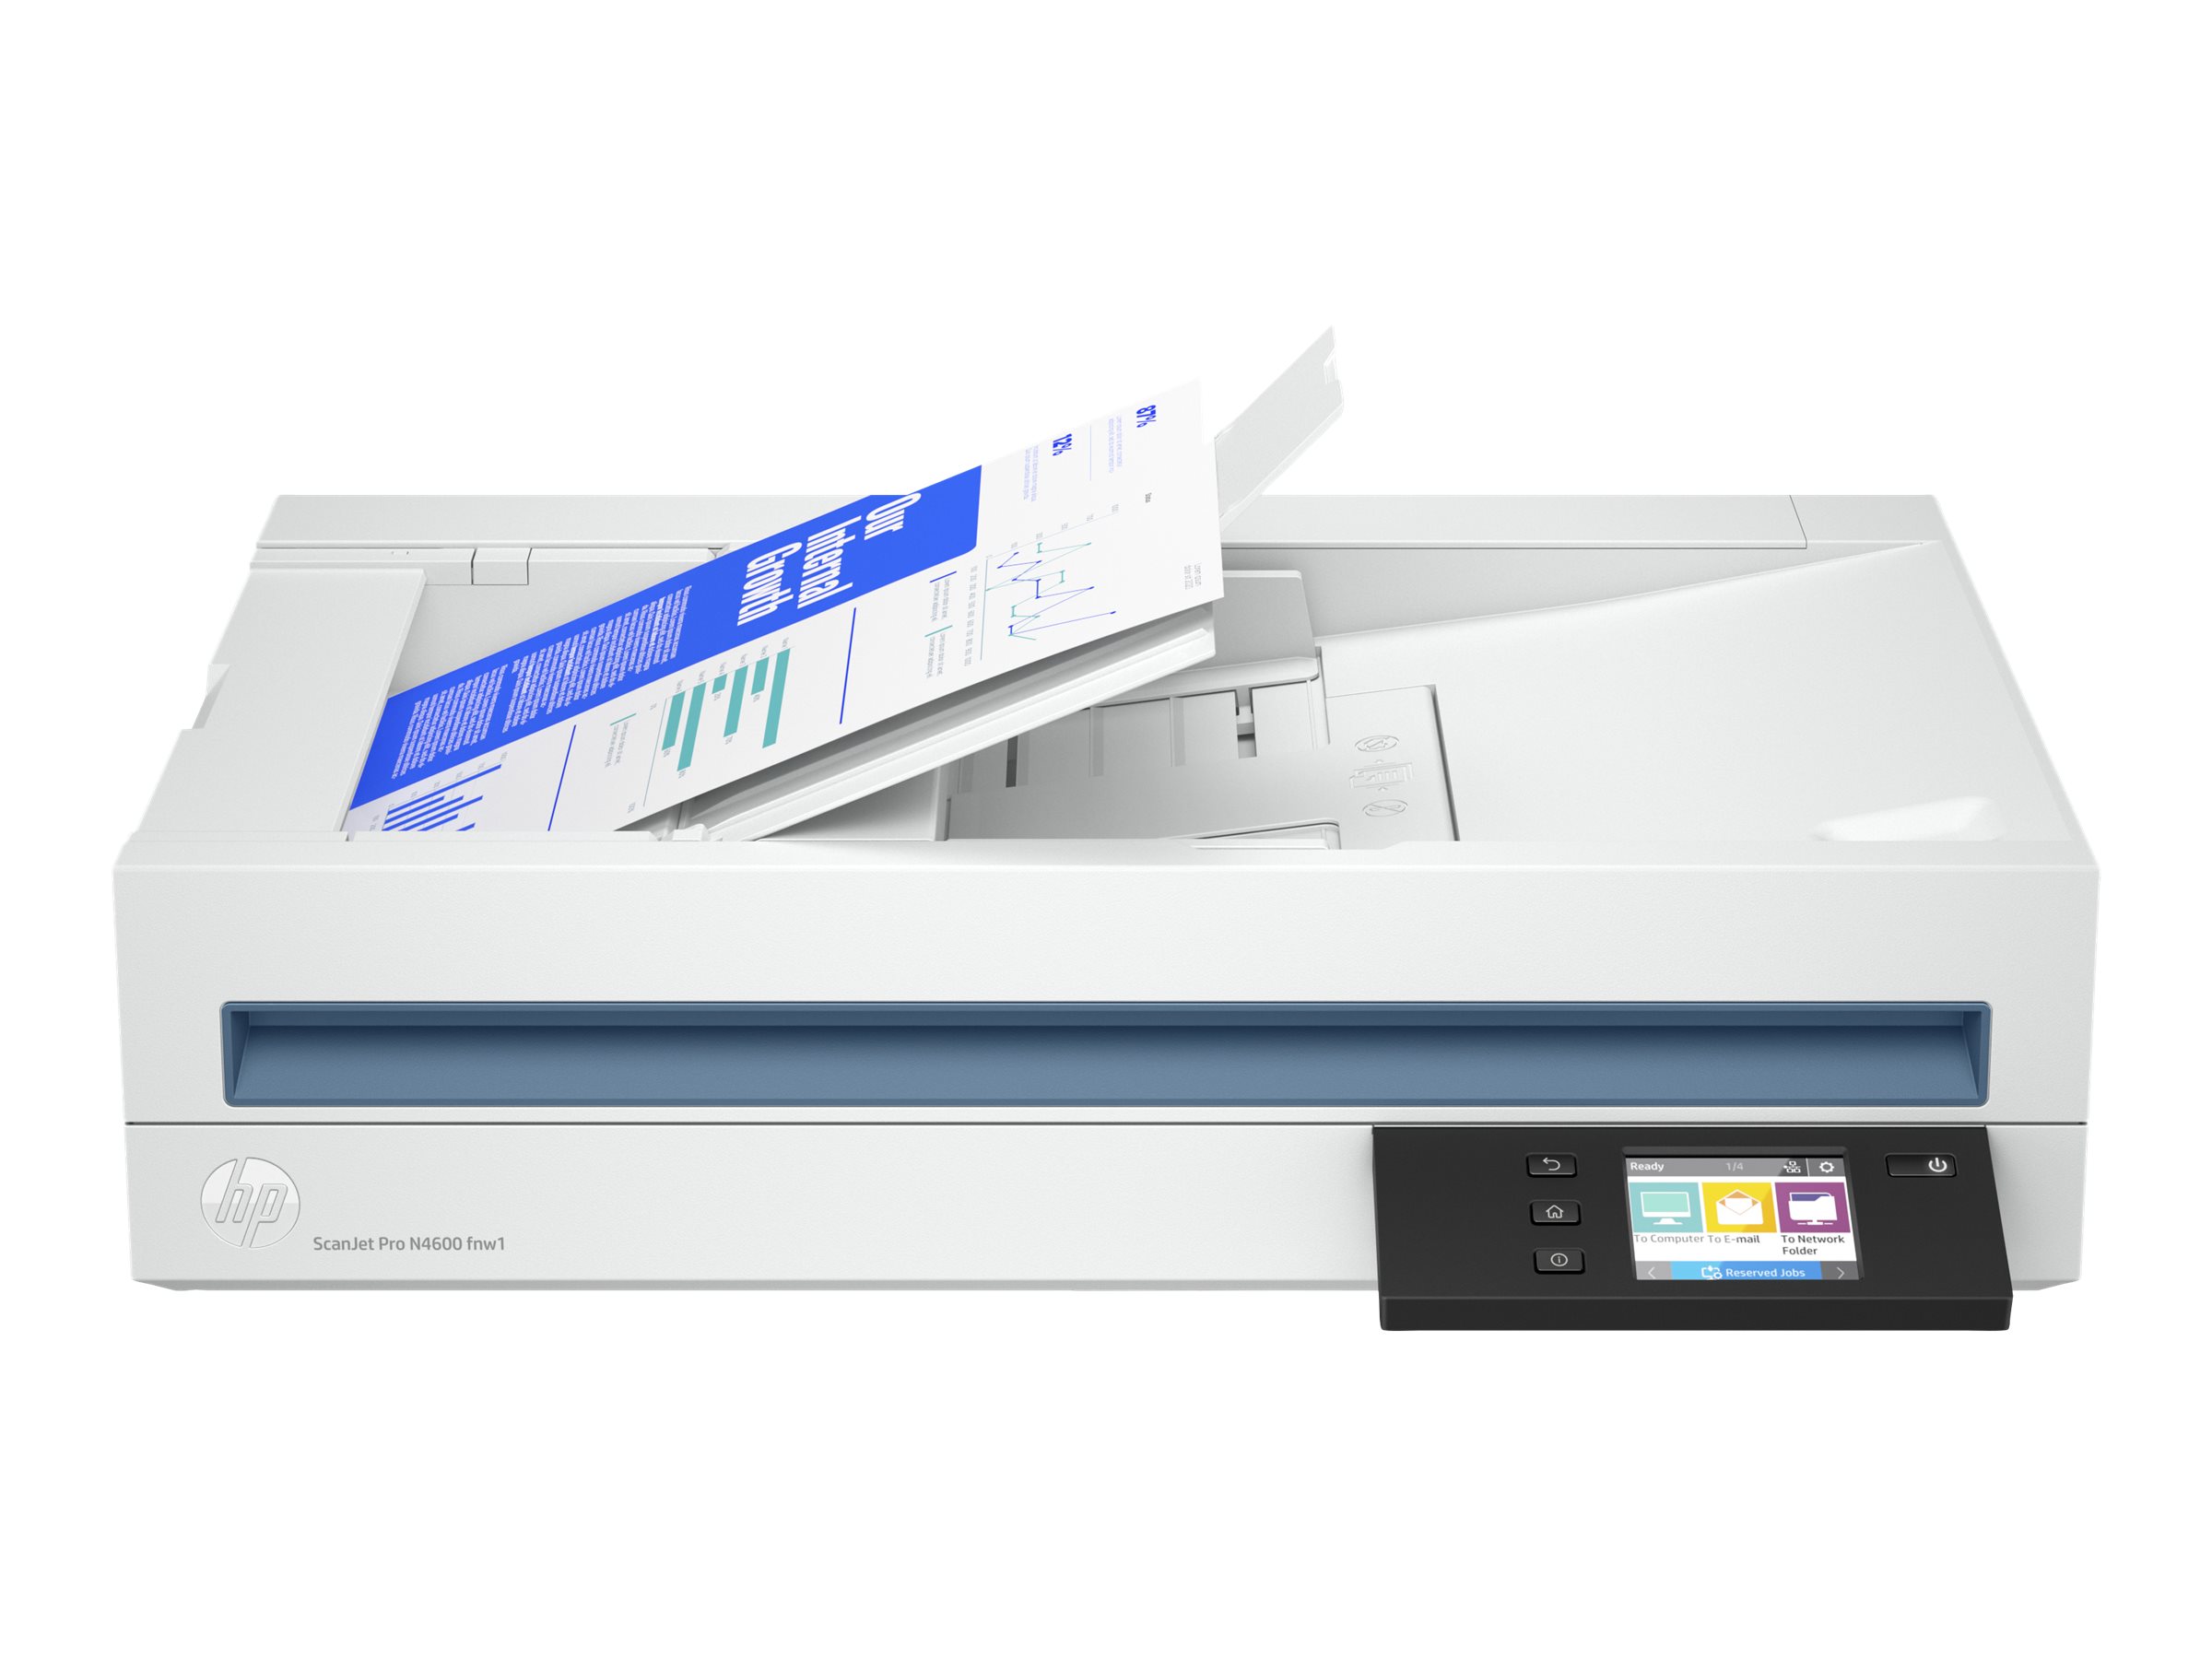 HP Scanjet Pro N4600 fnw1 - Dokumentenscanner - Contact Image Sensor (CIS) - Duplex - 216 x 5362 mm - 600 dpi x 1200 dpi - bis zu 40 Seiten/Min. (einfarbig) / bis zu 40 Seiten/Min. (Farbe) - automatischer Dokumenteneinzug (100 Blätter) - bis zu 6000